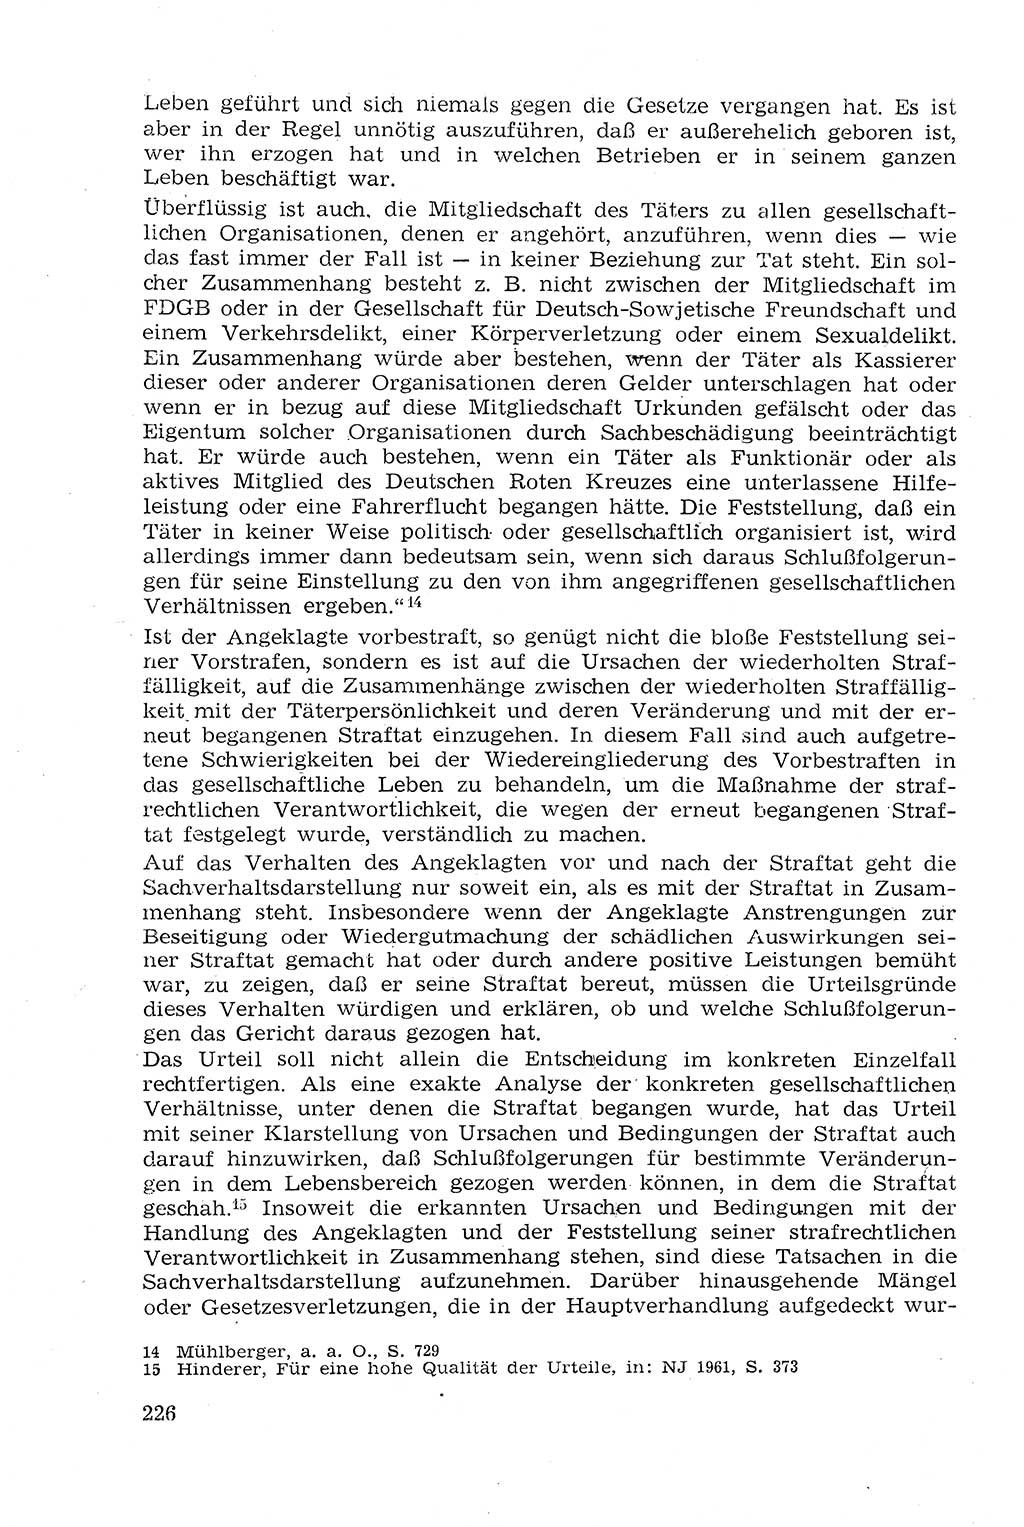 Strafprozeßrecht der DDR (Deutsche Demokratische Republik), Lehrmaterial 1969, Seite 226 (Strafprozeßr. DDR Lehrmat. 1969, S. 226)